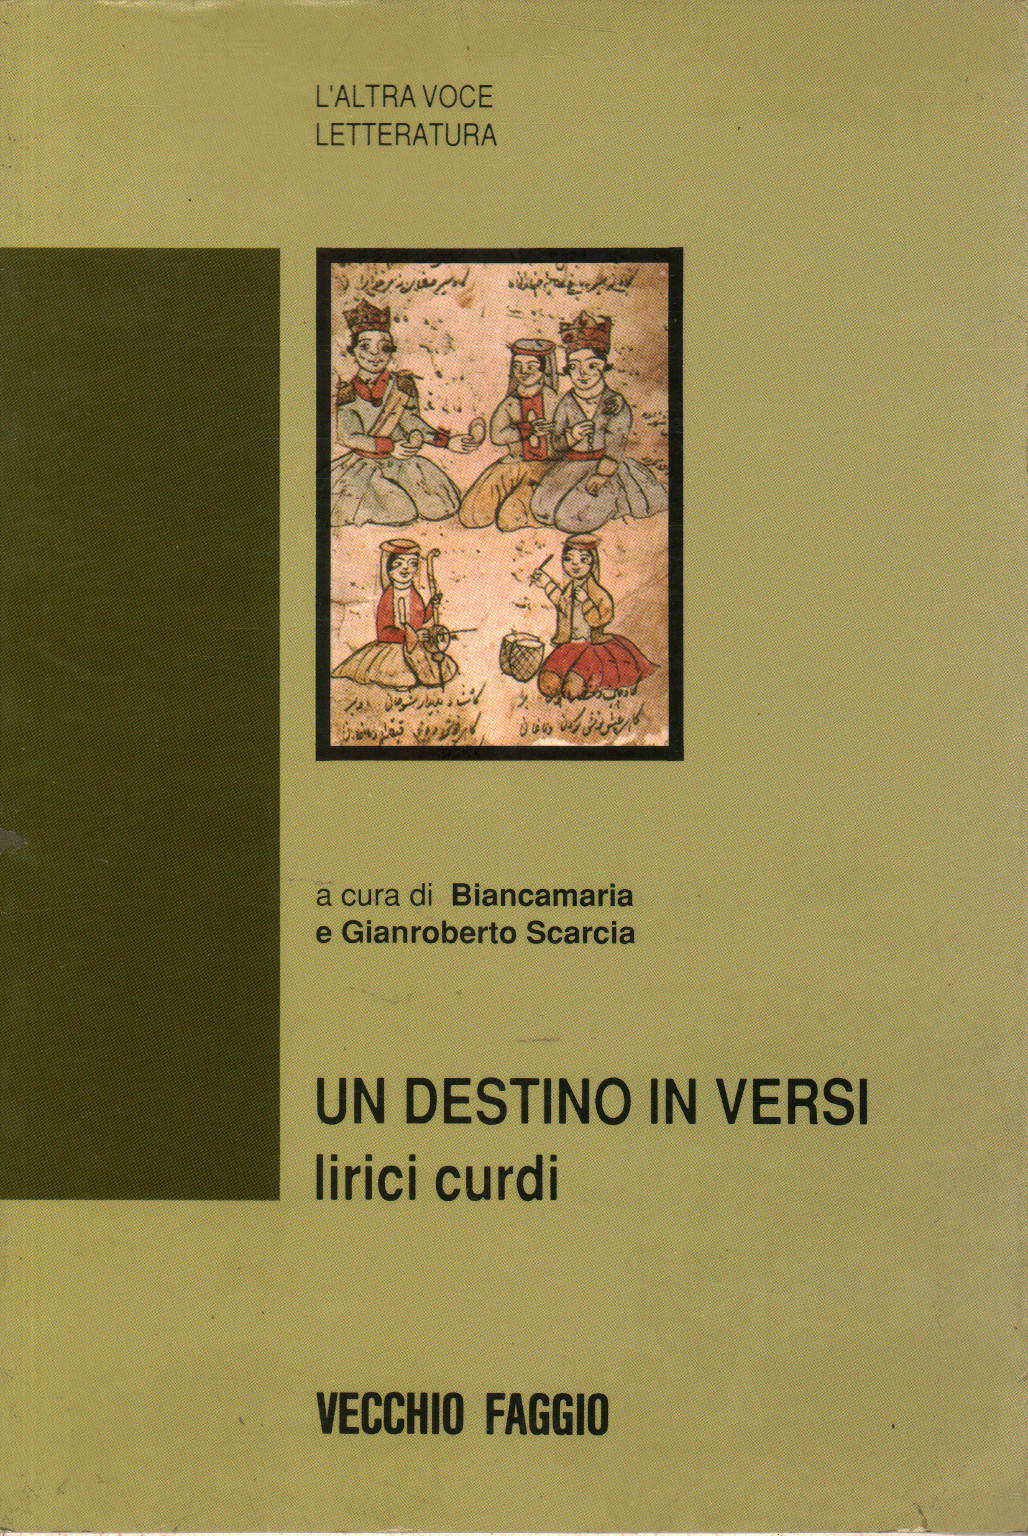 Ein schicksal in versen, Biancamaria und Gianroberto Scarcia